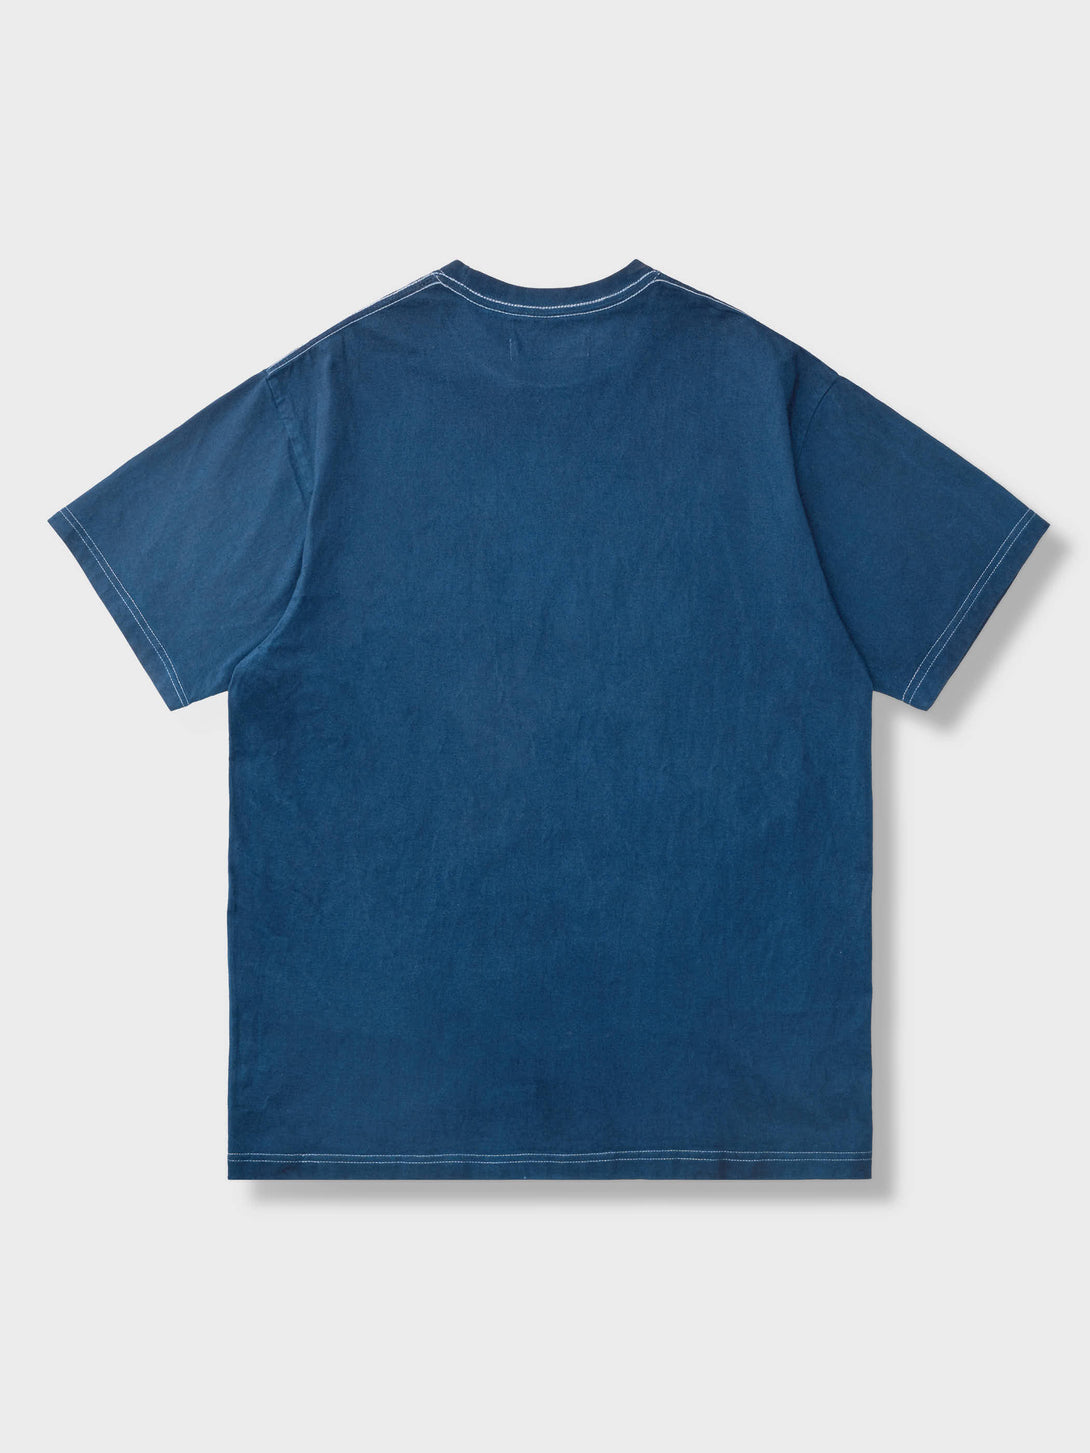 インディゴ染めのシンプルでクラシックなデザインのTシャツ、柔らかくしっかりとしたコットン生地